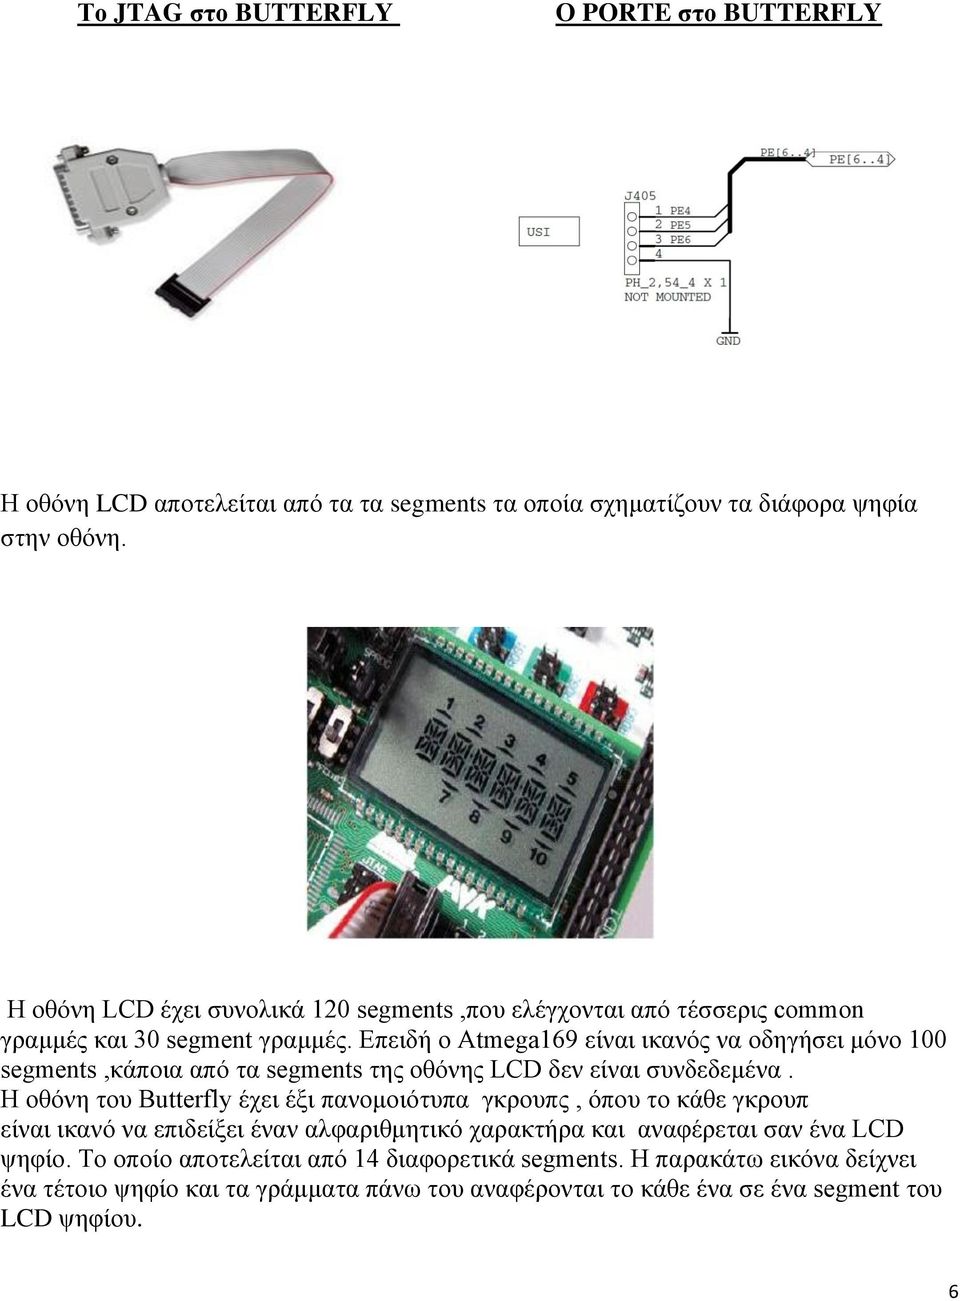 Δπεηδή ν Atmega169 είλαη ηθαλφο λα νδεγήζεη κφλν 100 segments,θάπνηα απφ ηα segments ηεο νζφλεο LCD δελ είλαη ζπλδεδεκέλα.